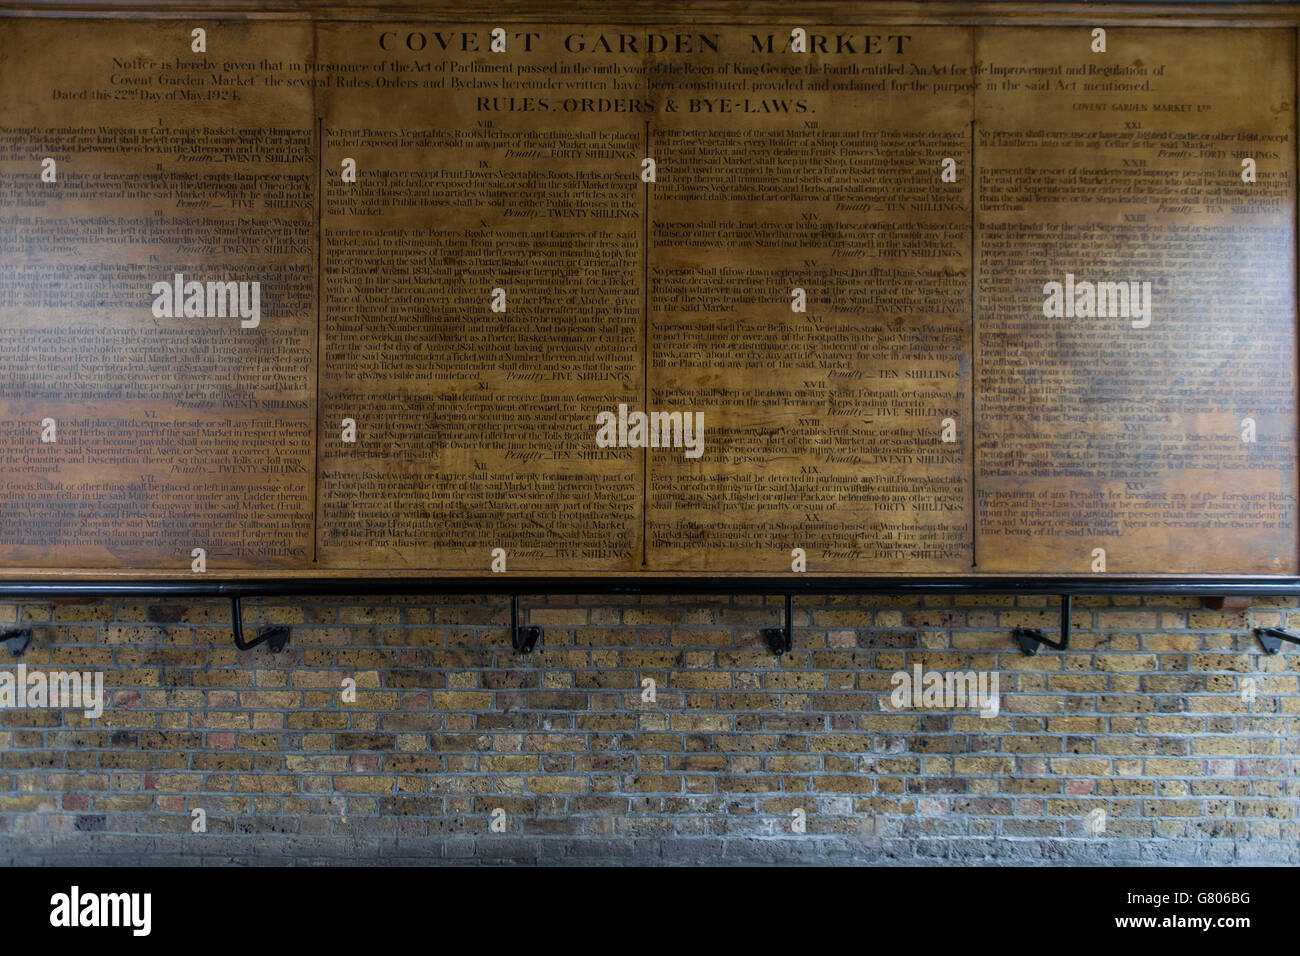 Una visione generale di una commissione che delinea le regole, gli ordini e le leggi di bye in vigore al mercato di Covent Garden, il segno è datato 22 maggio. 1924. Foto Stock